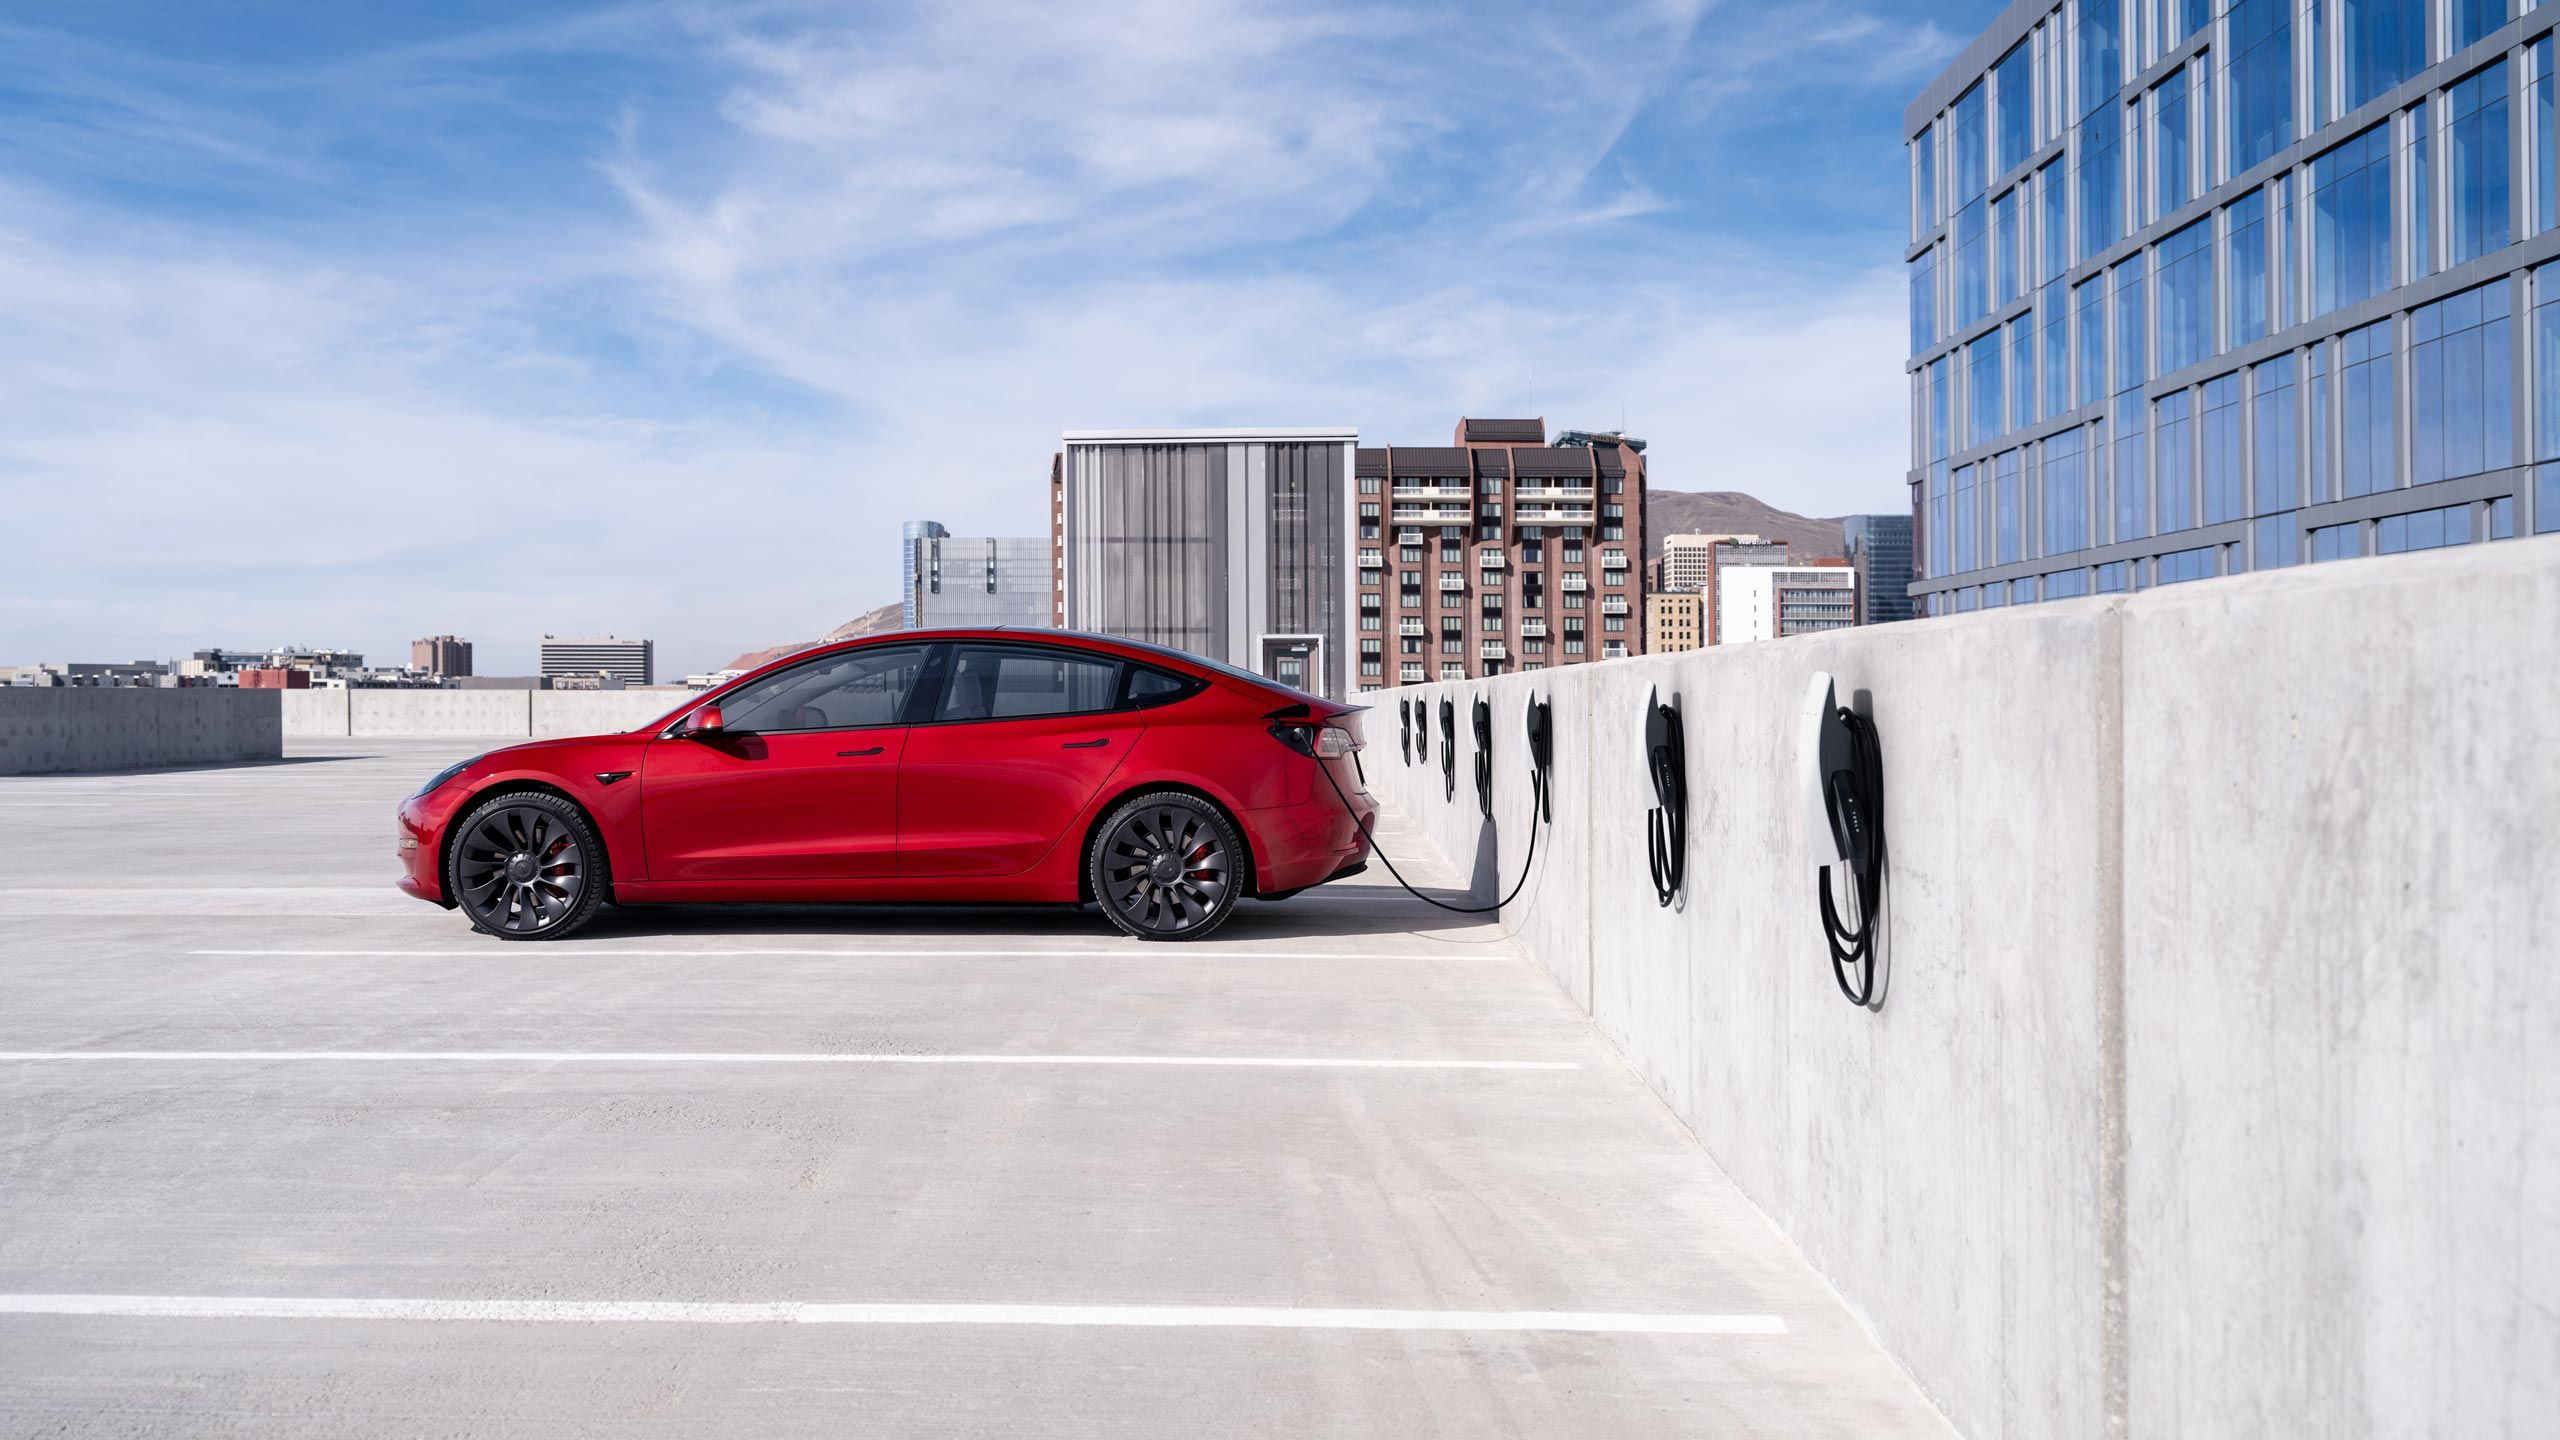 یک تسلا مدل 3 قرمز رنگ در پارکینگ پشت بام شارژ می شود